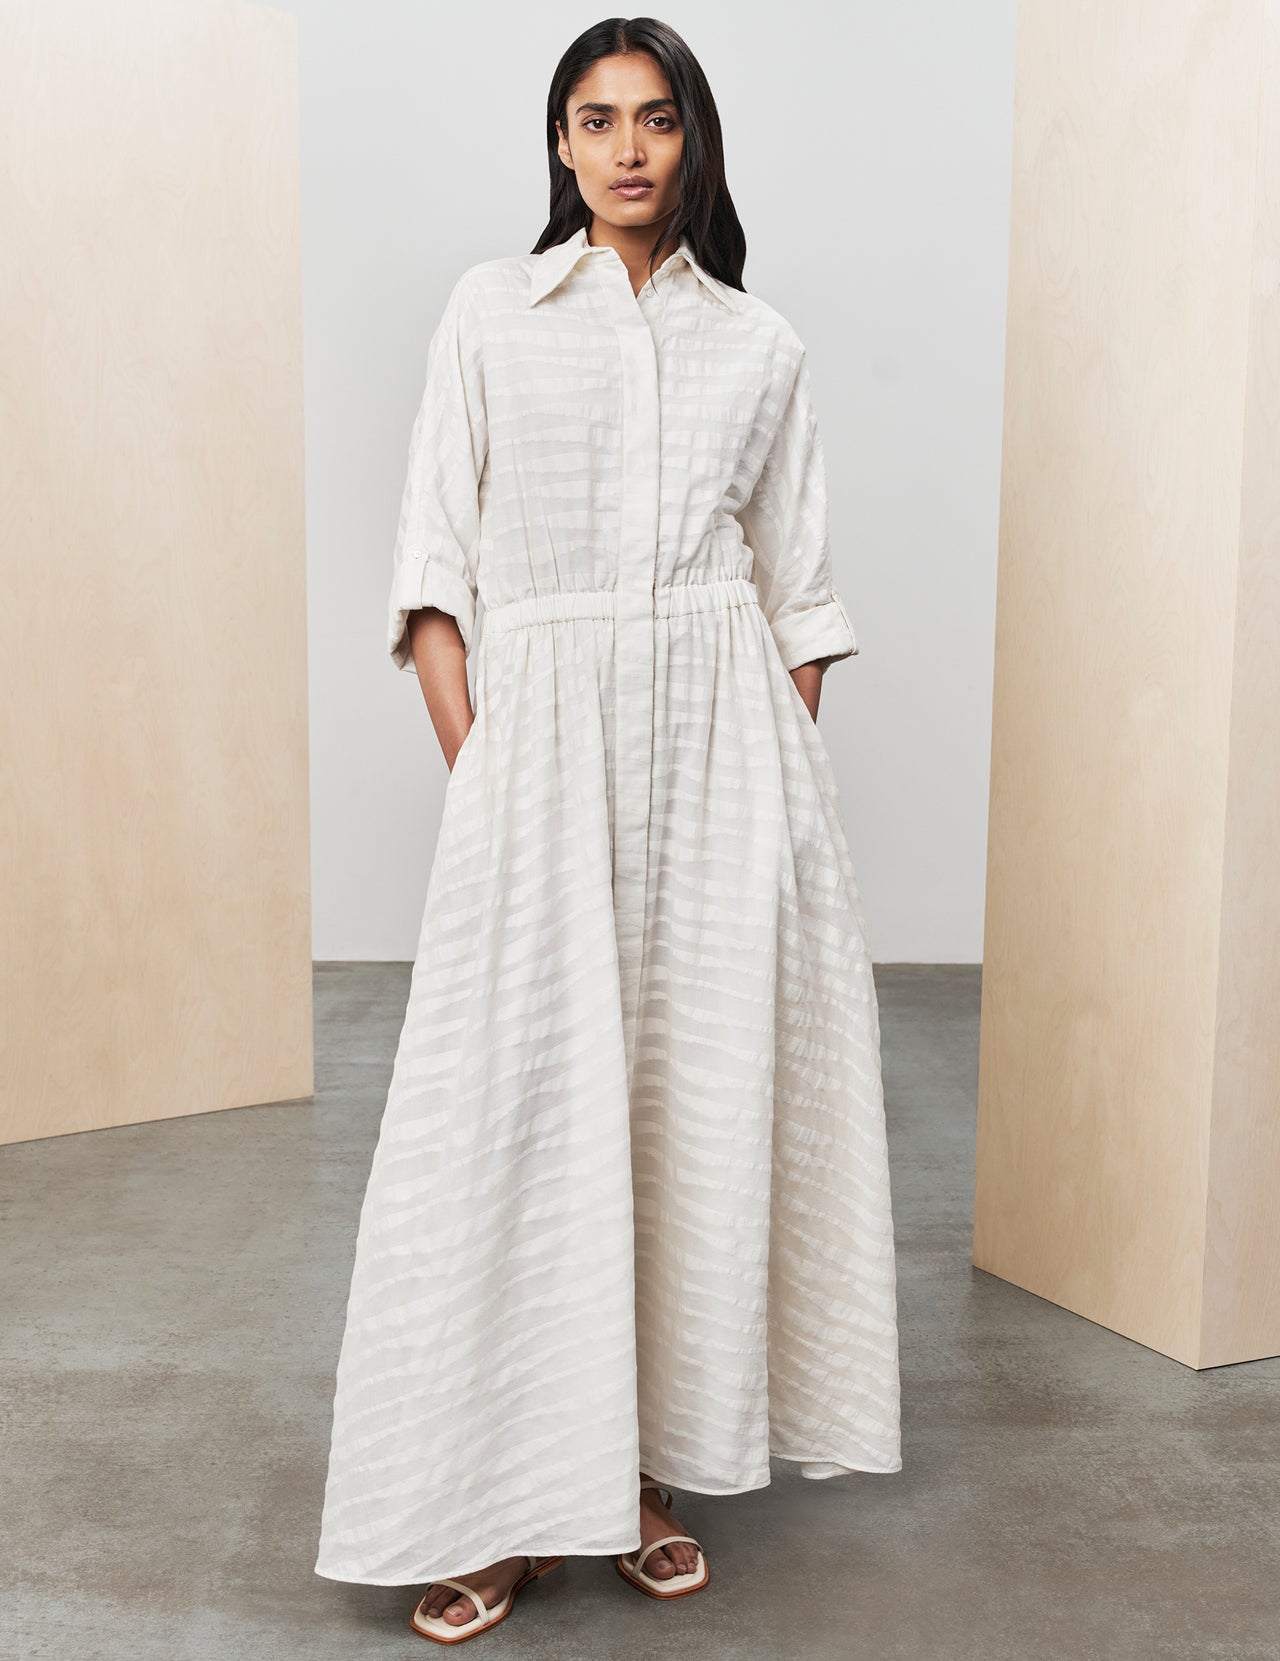  Off-White Hand Woven Cottton Ryka Maxi Dress 